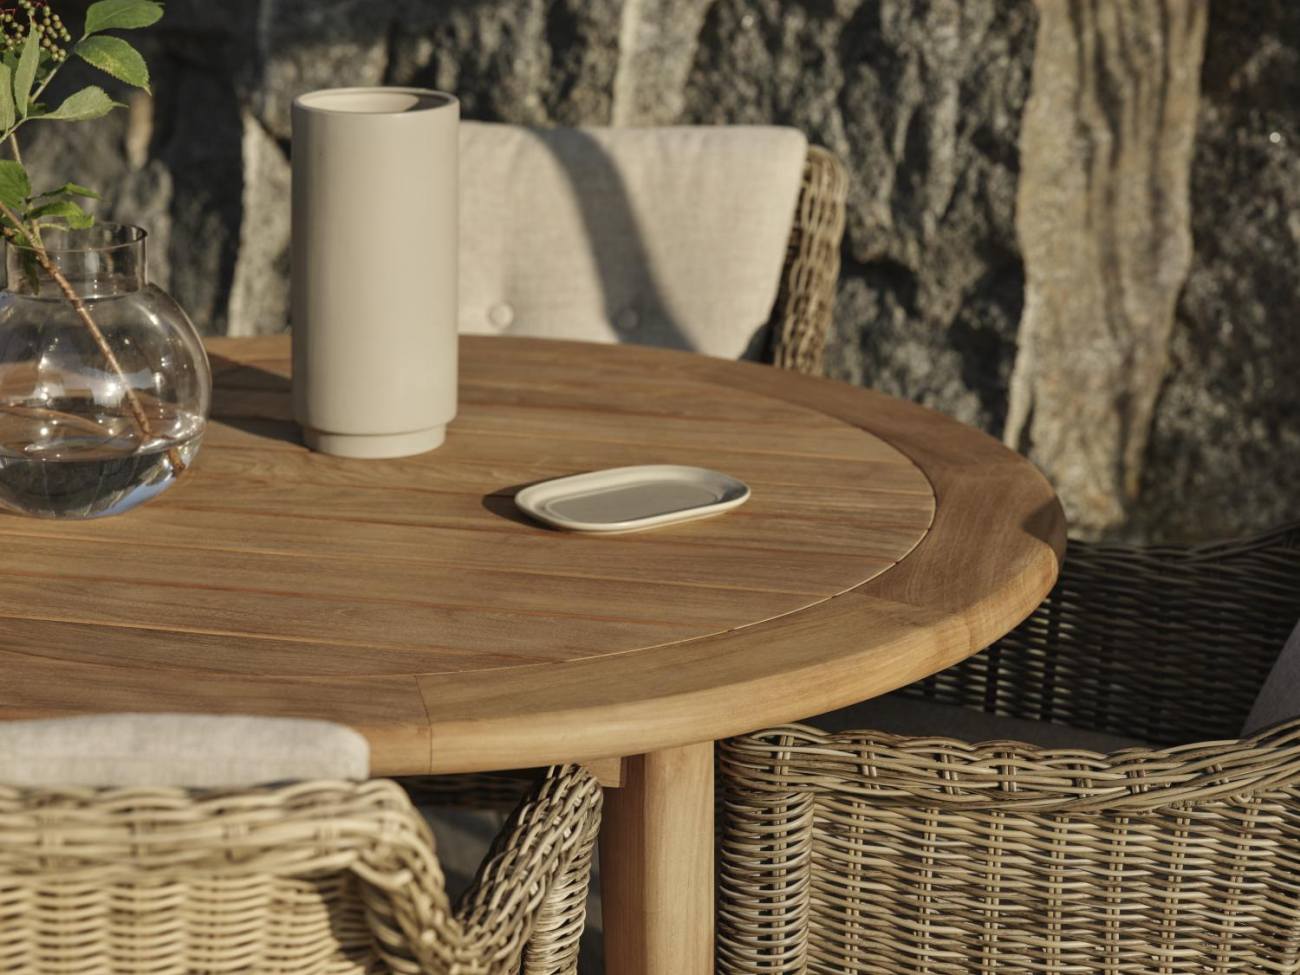 Der Gartenesstisch Lilja überzeugt mit seinem modernen Design. Gefertigt wurde die Tischplatte aus Teakholz und hat eine natürliche Farbe. Das Gestell ist auch aus Teakholz und hat eine natürliche Farbe. Der Tisch besitzt einen Durchmesser von 165 cm.